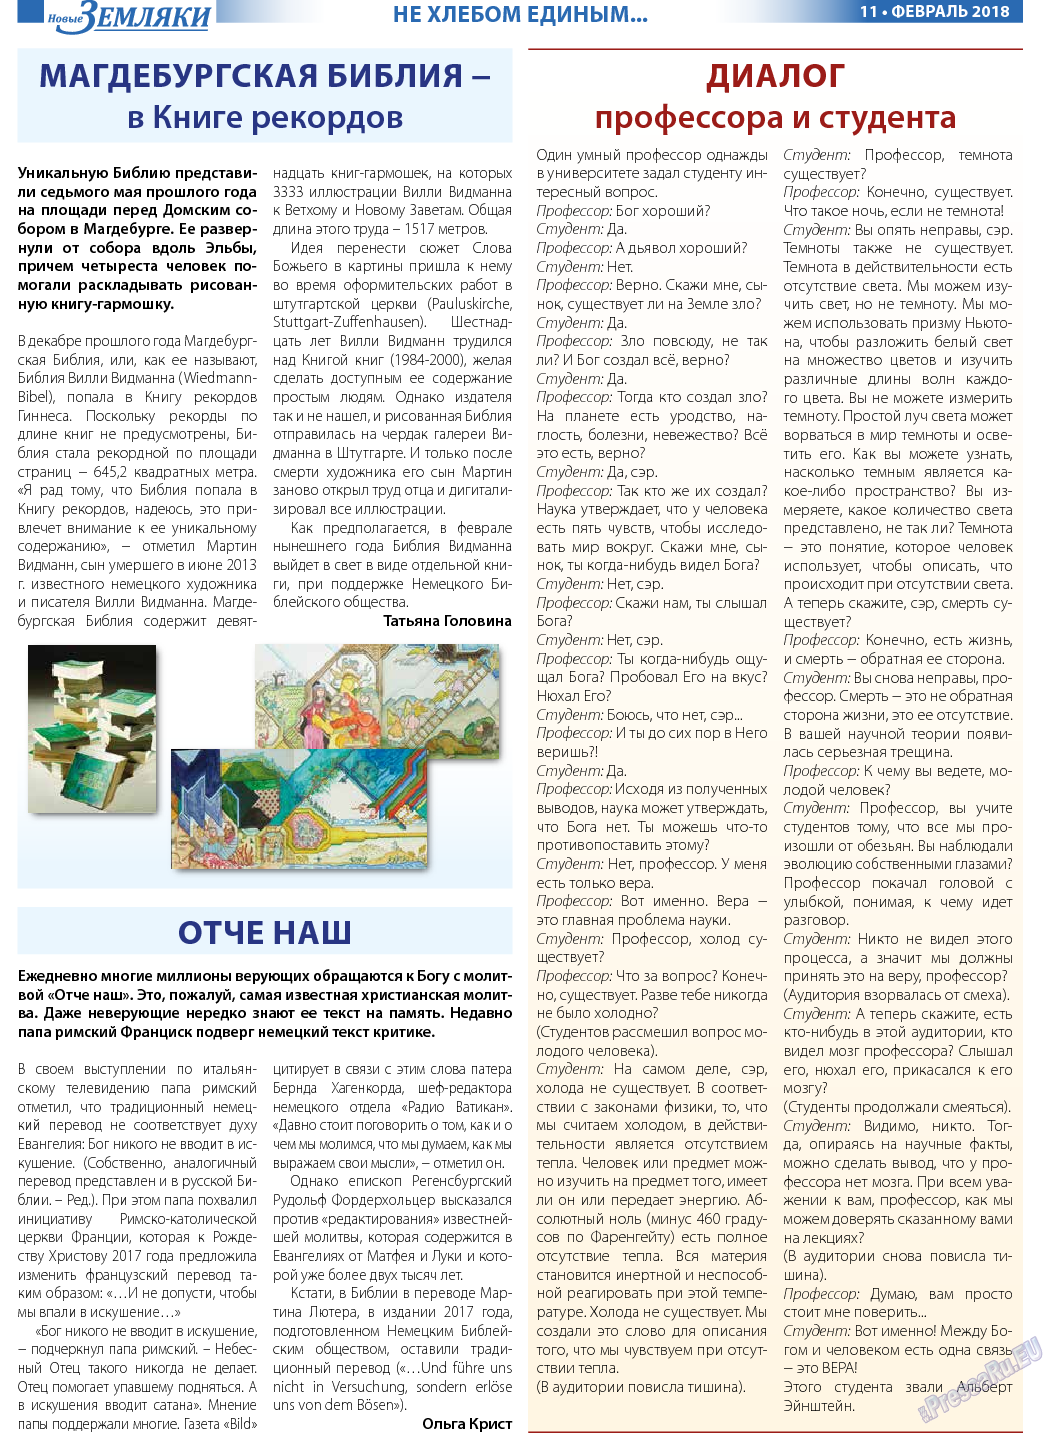 Новые Земляки (газета). 2018 год, номер 2, стр. 11